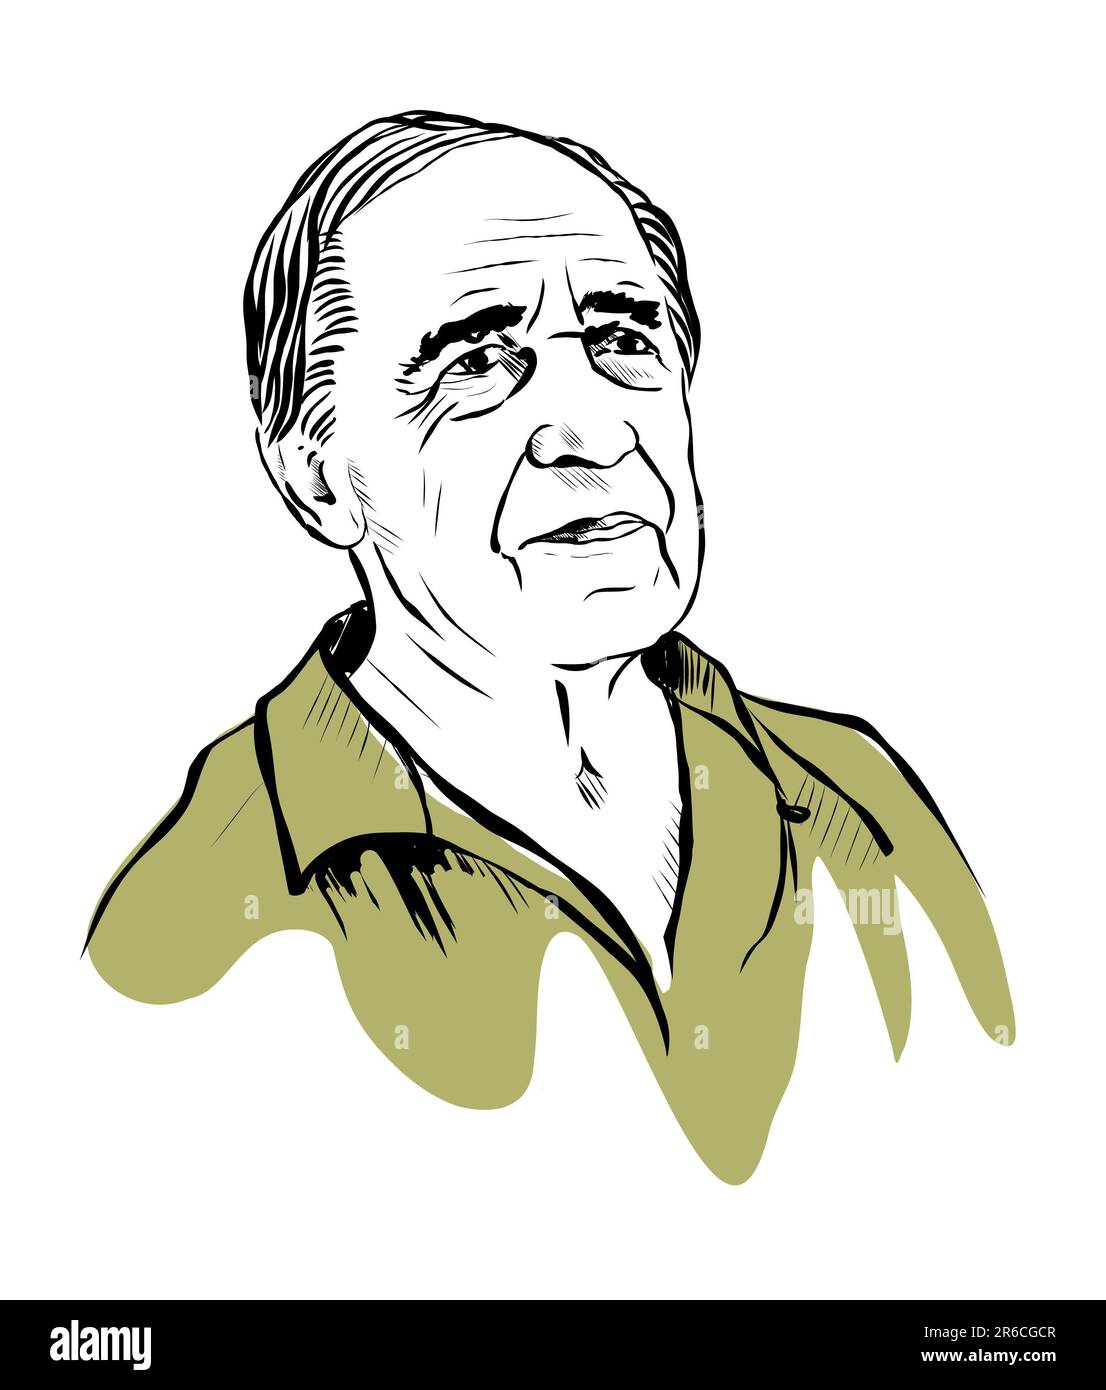 Pierre Boulez Porträtbild, Illustration, handgezeichnete Skizze isoliert auf weißem Hintergrund Stockfoto